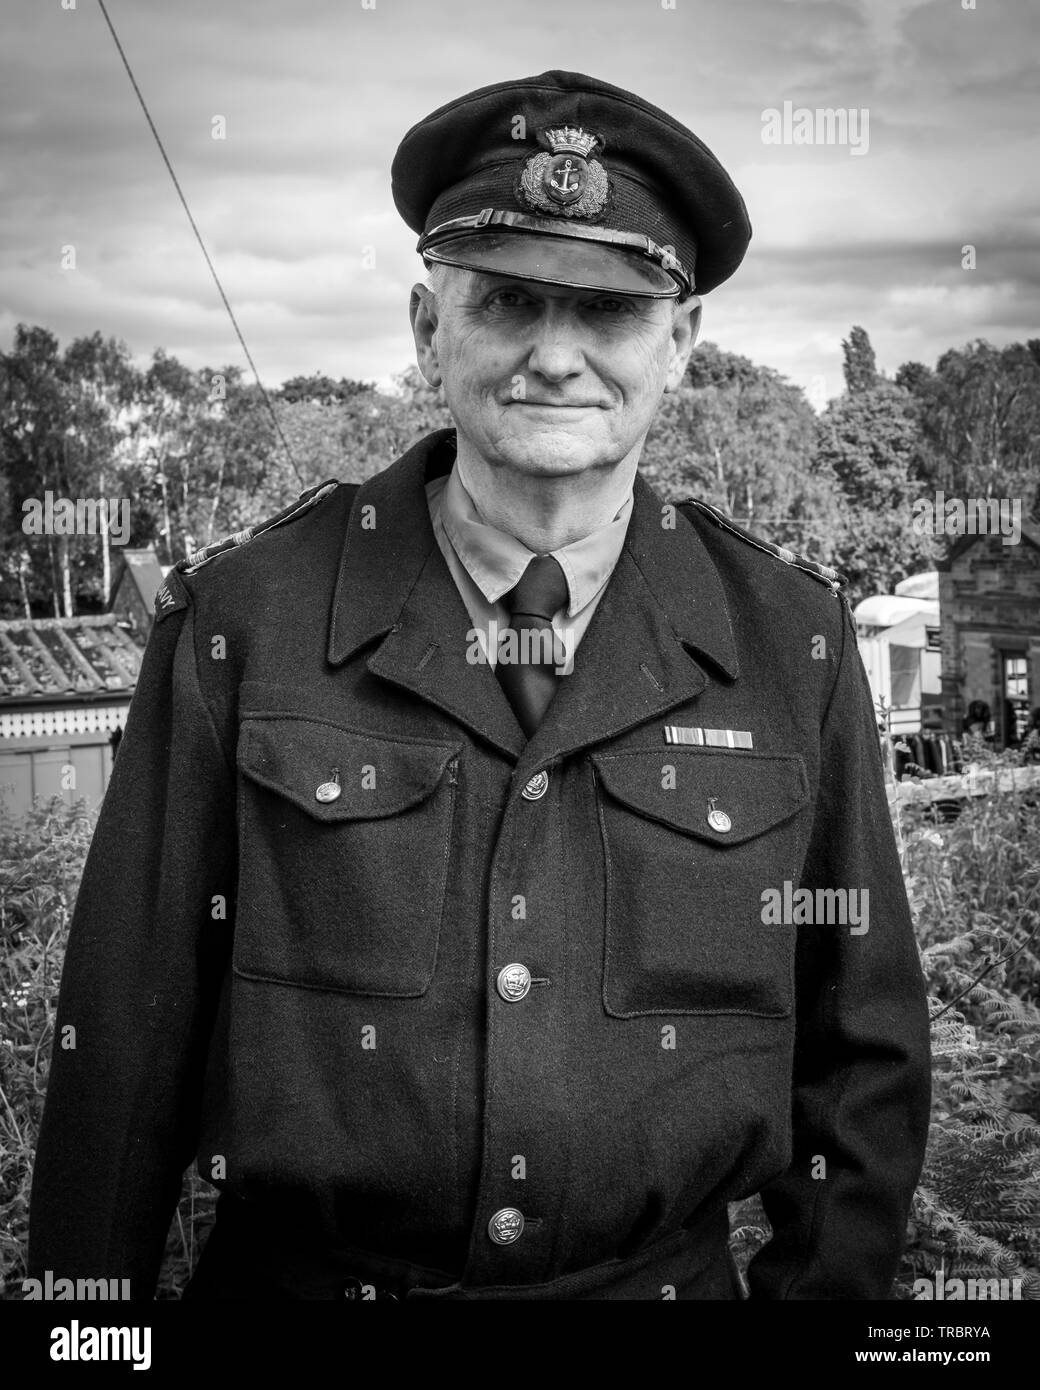 Portraits aus den 40er Jahren Krieg Wochenende an der Great Central Railway in Loughborough, Loughborough Großbritannien. Stockfoto